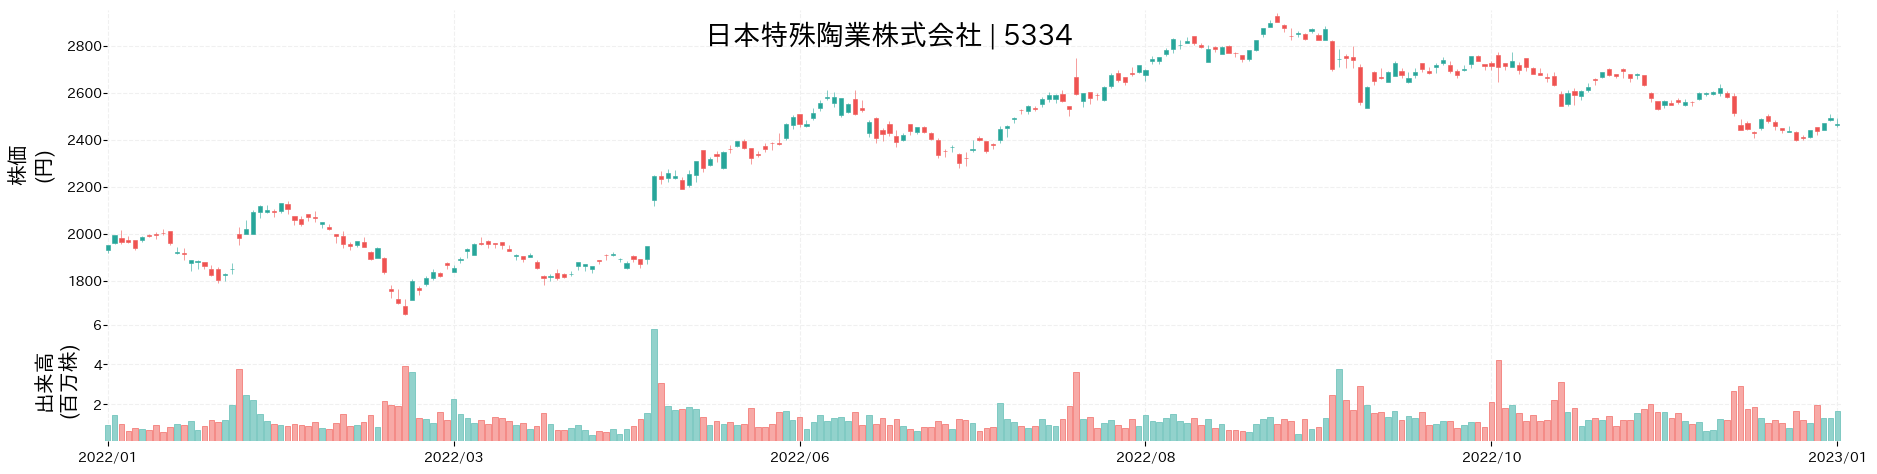 日本特殊陶業の株価推移(2022)